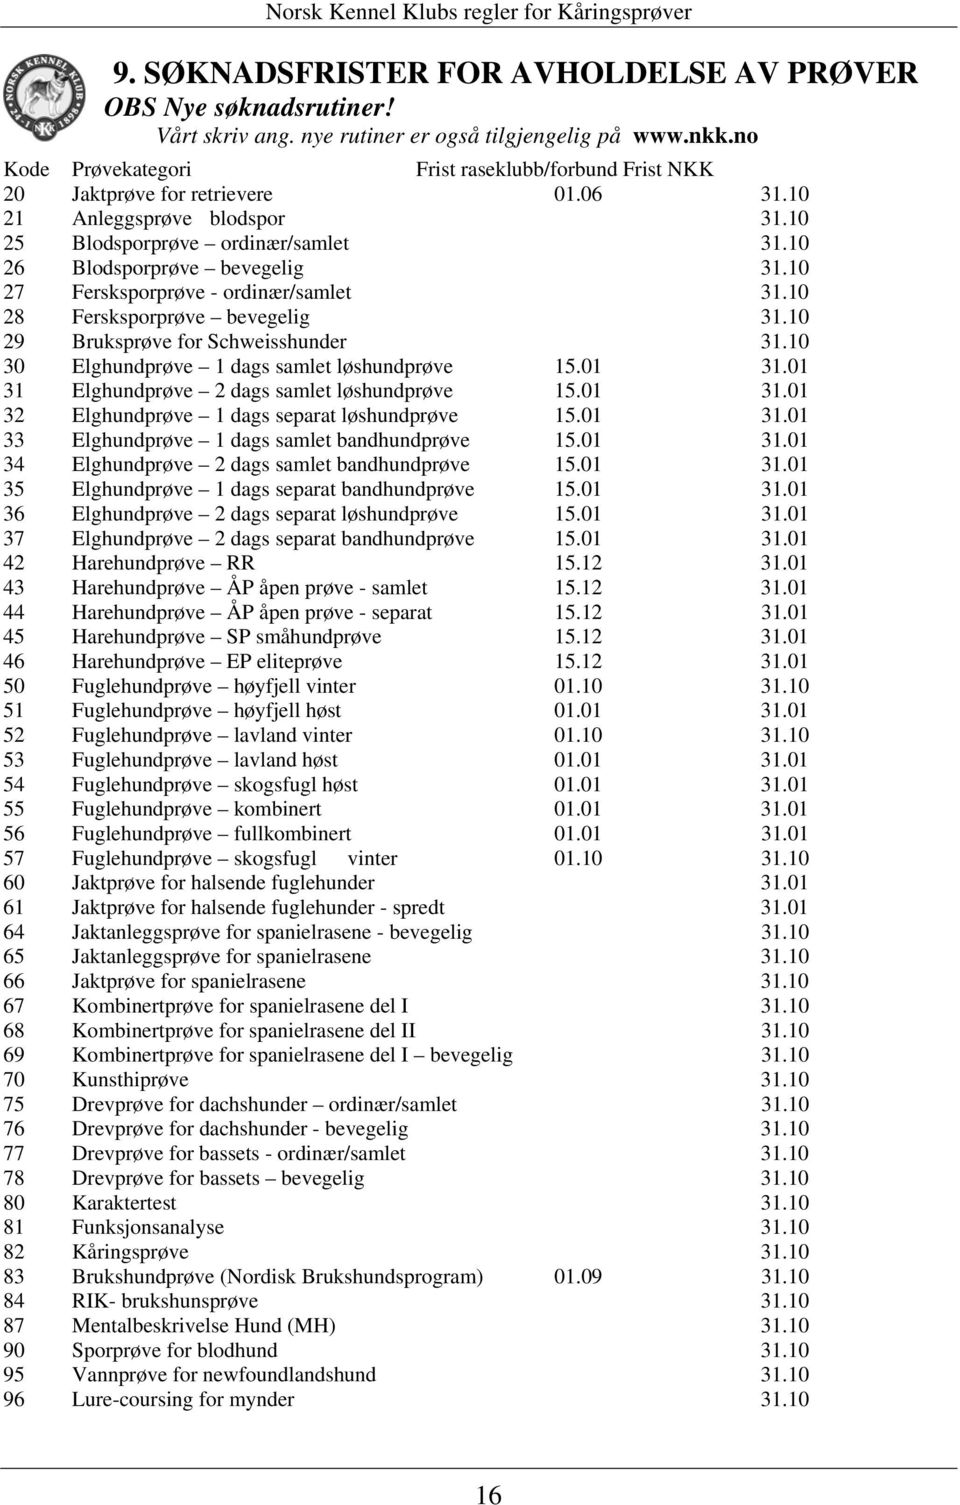 10 27 Fersksporprøve - ordinær/samlet 31.10 28 Fersksporprøve bevegelig 31.10 29 Bruksprøve for Schweisshunder 31.10 30 Elghundprøve 1 dags samlet løshundprøve 15.01 31.